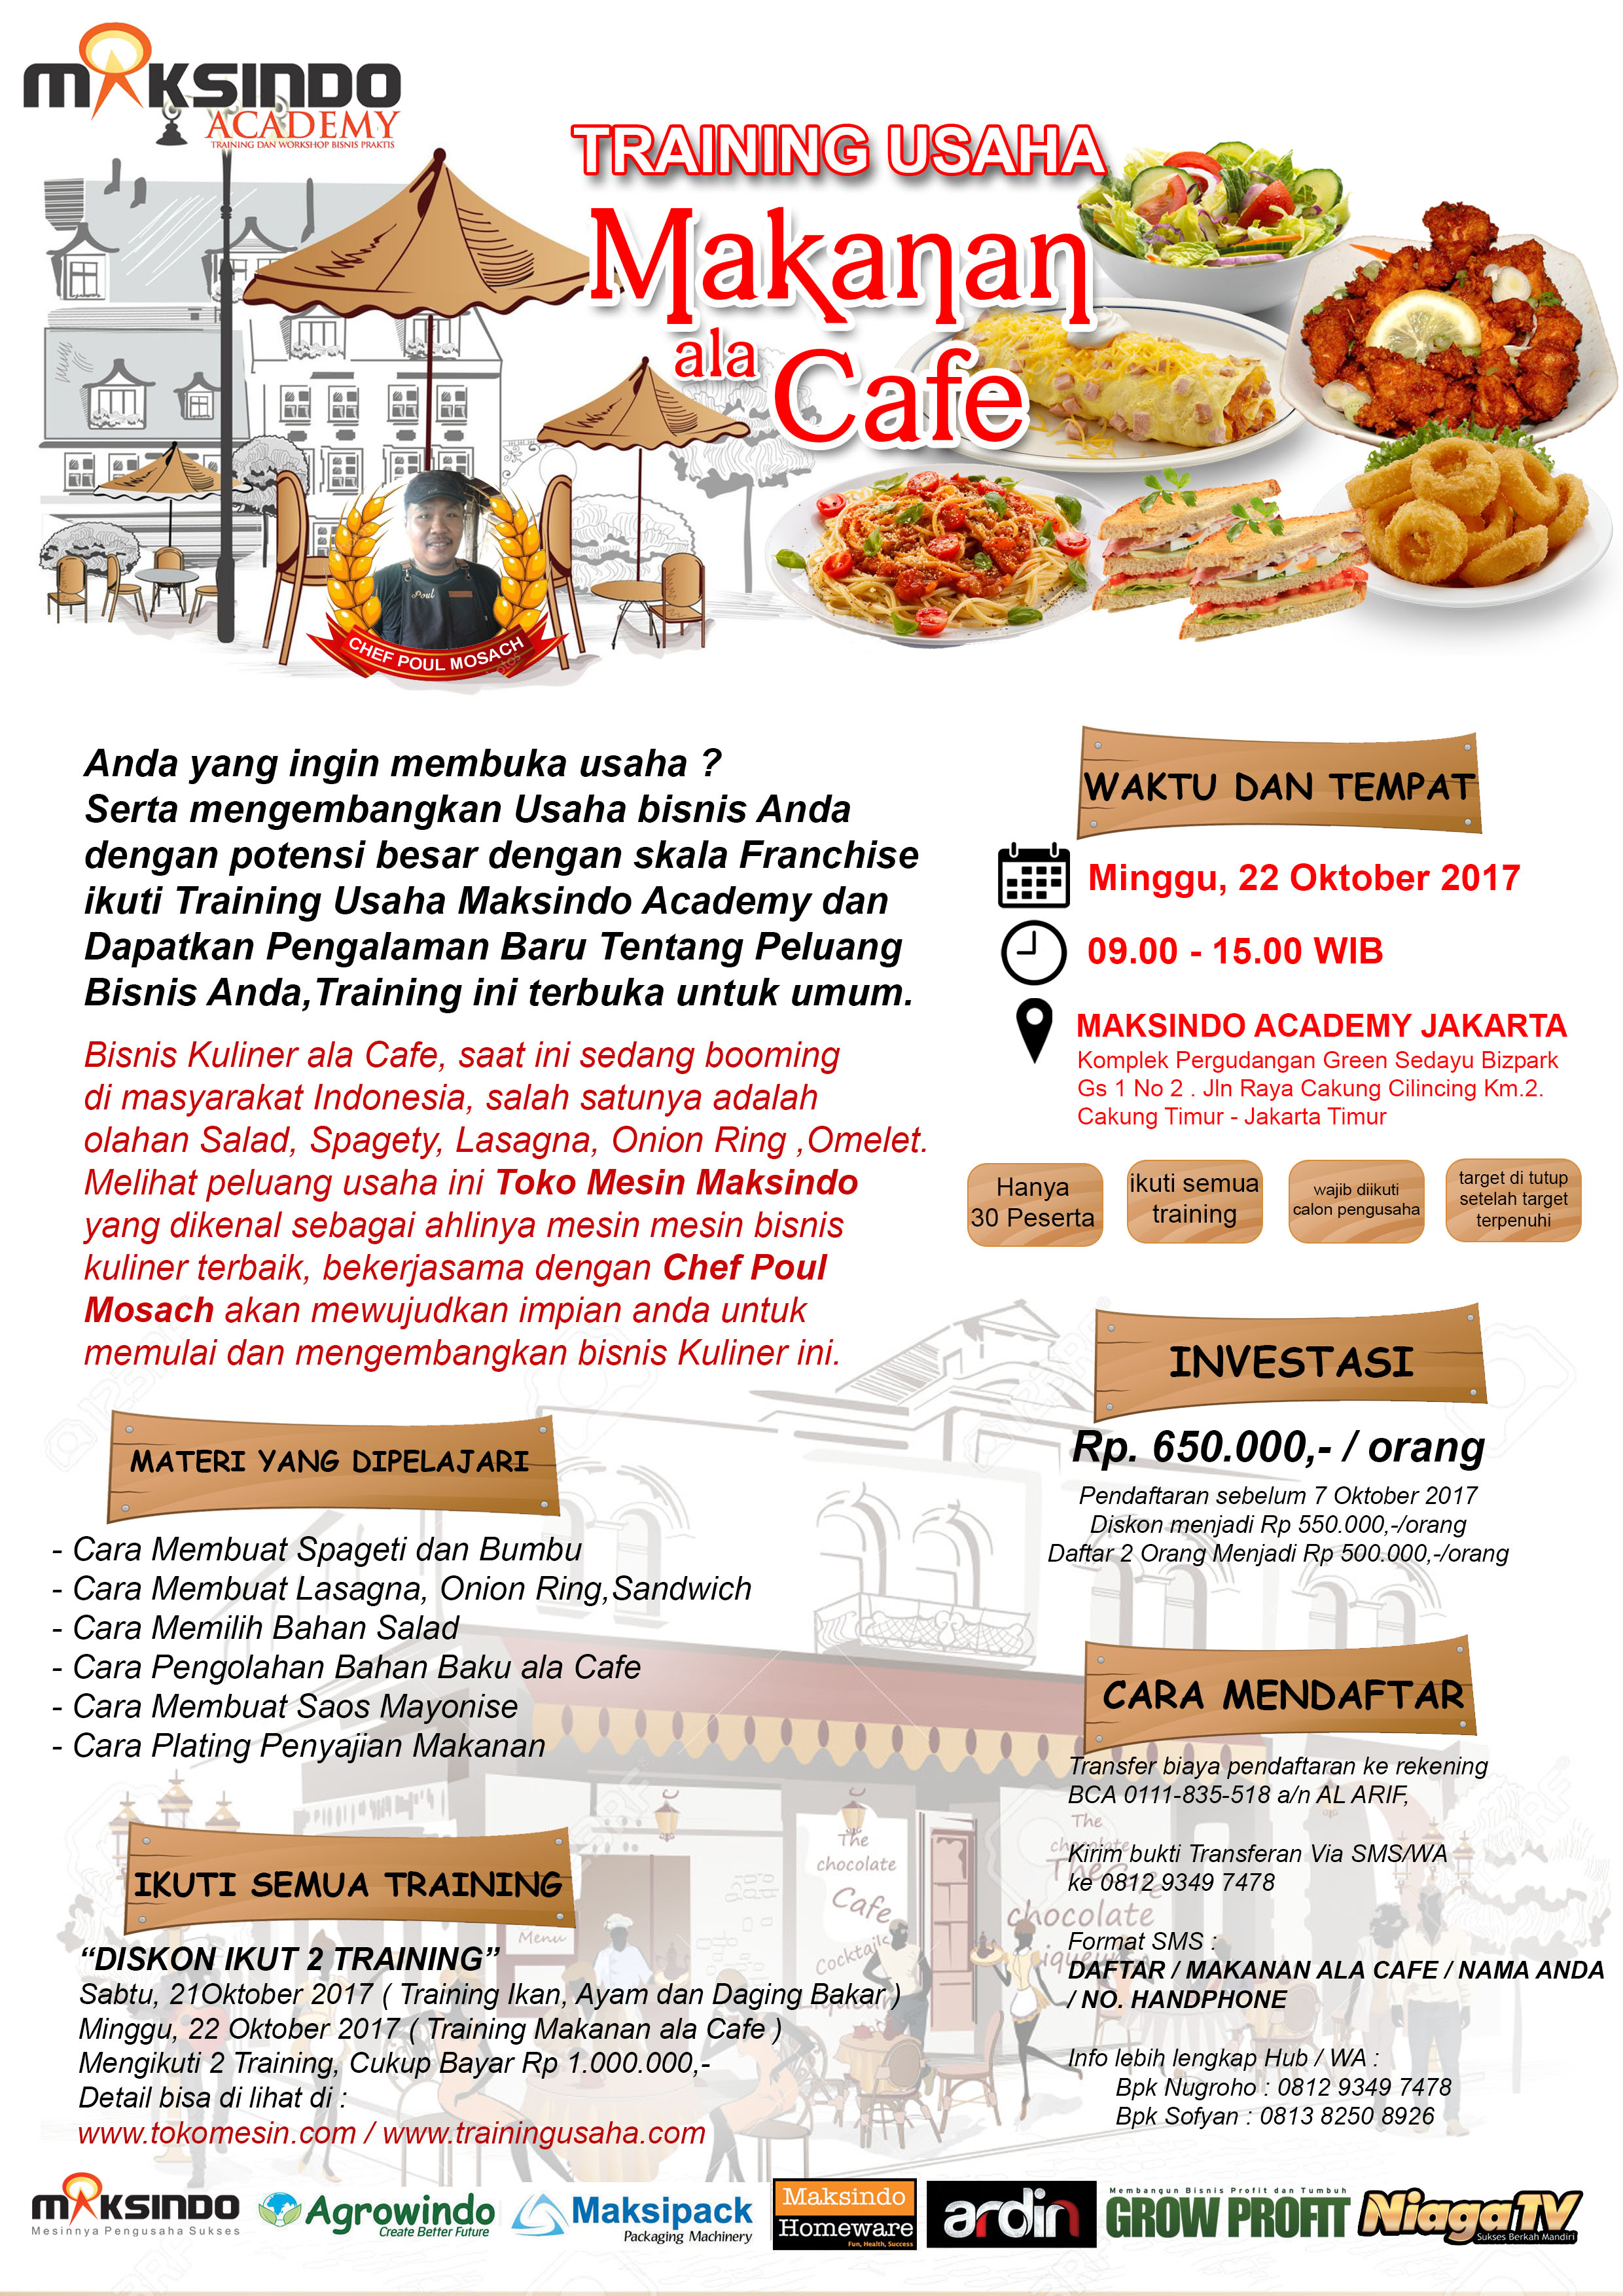 Training Usaha Makanan Ala Cafe, 22 Oktober 2017